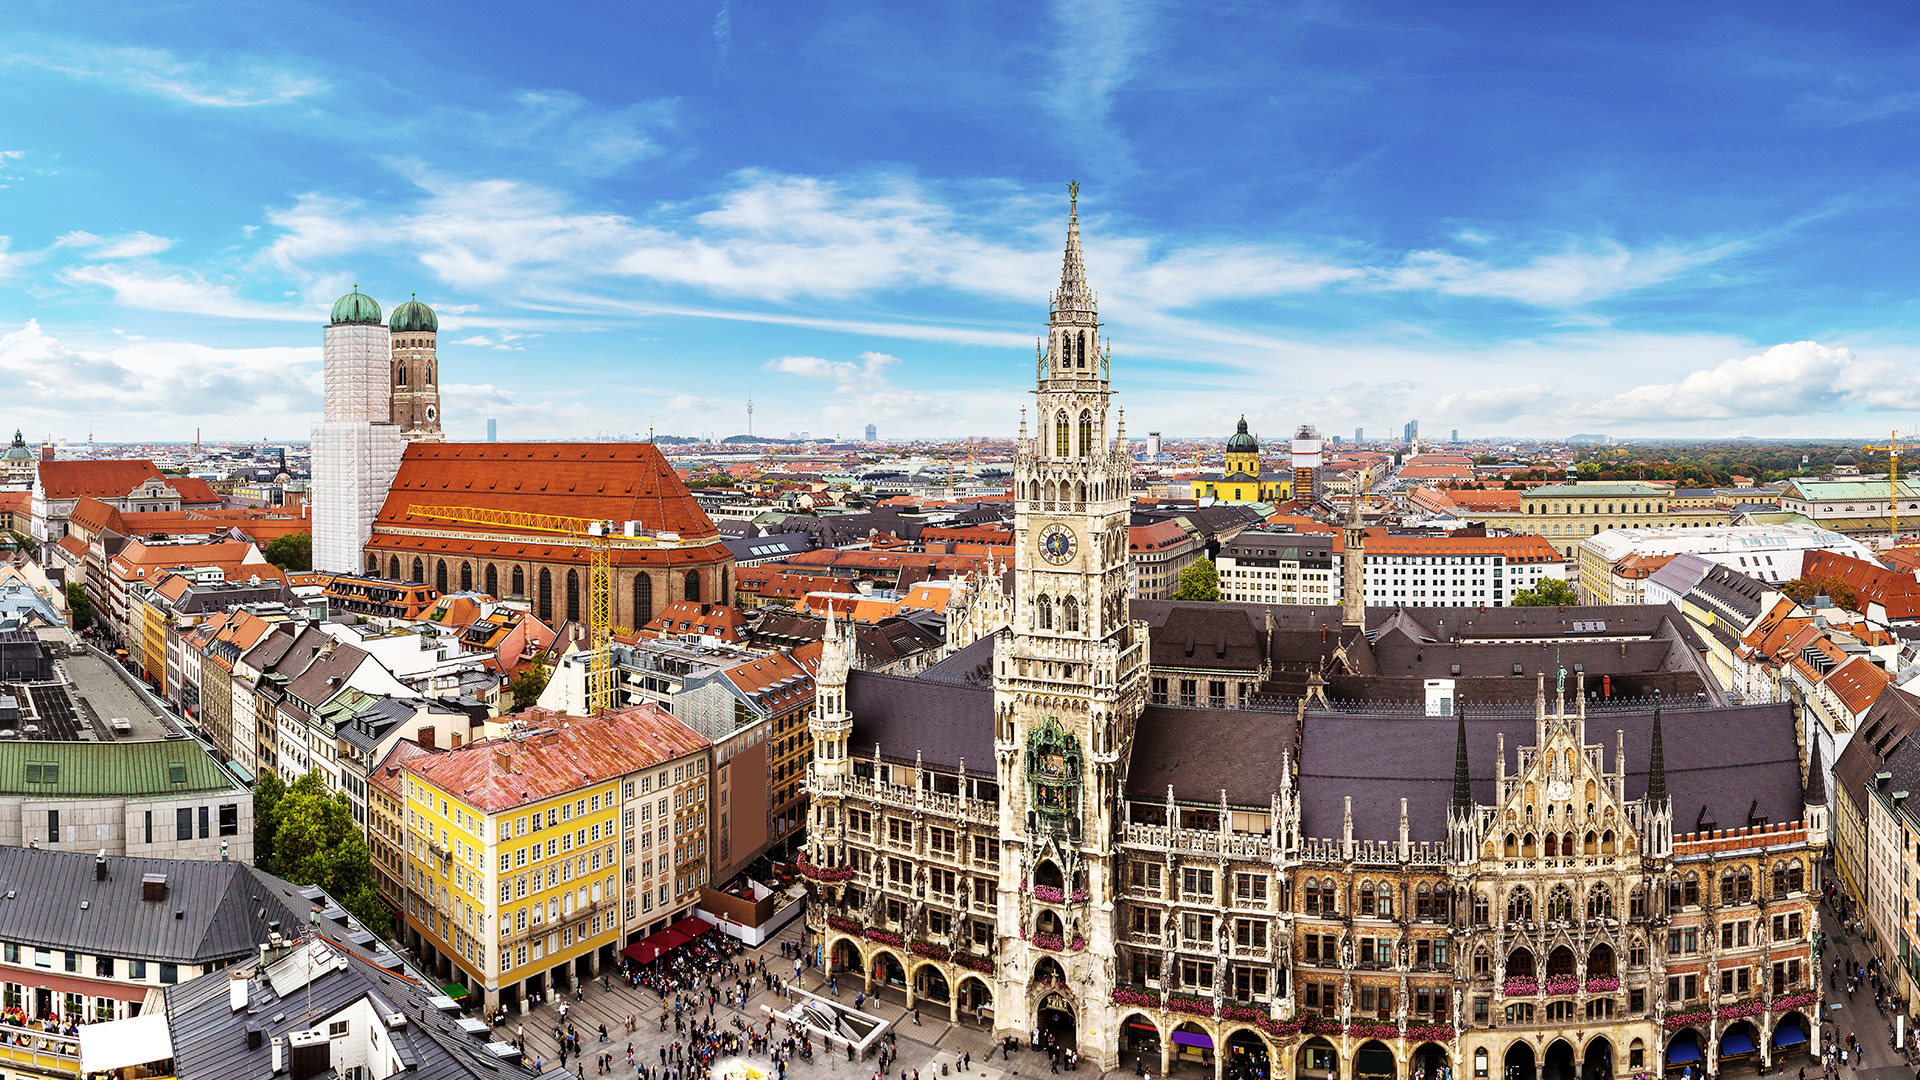 Du lịch Munich - Khám phá các điểm tham quan và hoạt động 2022